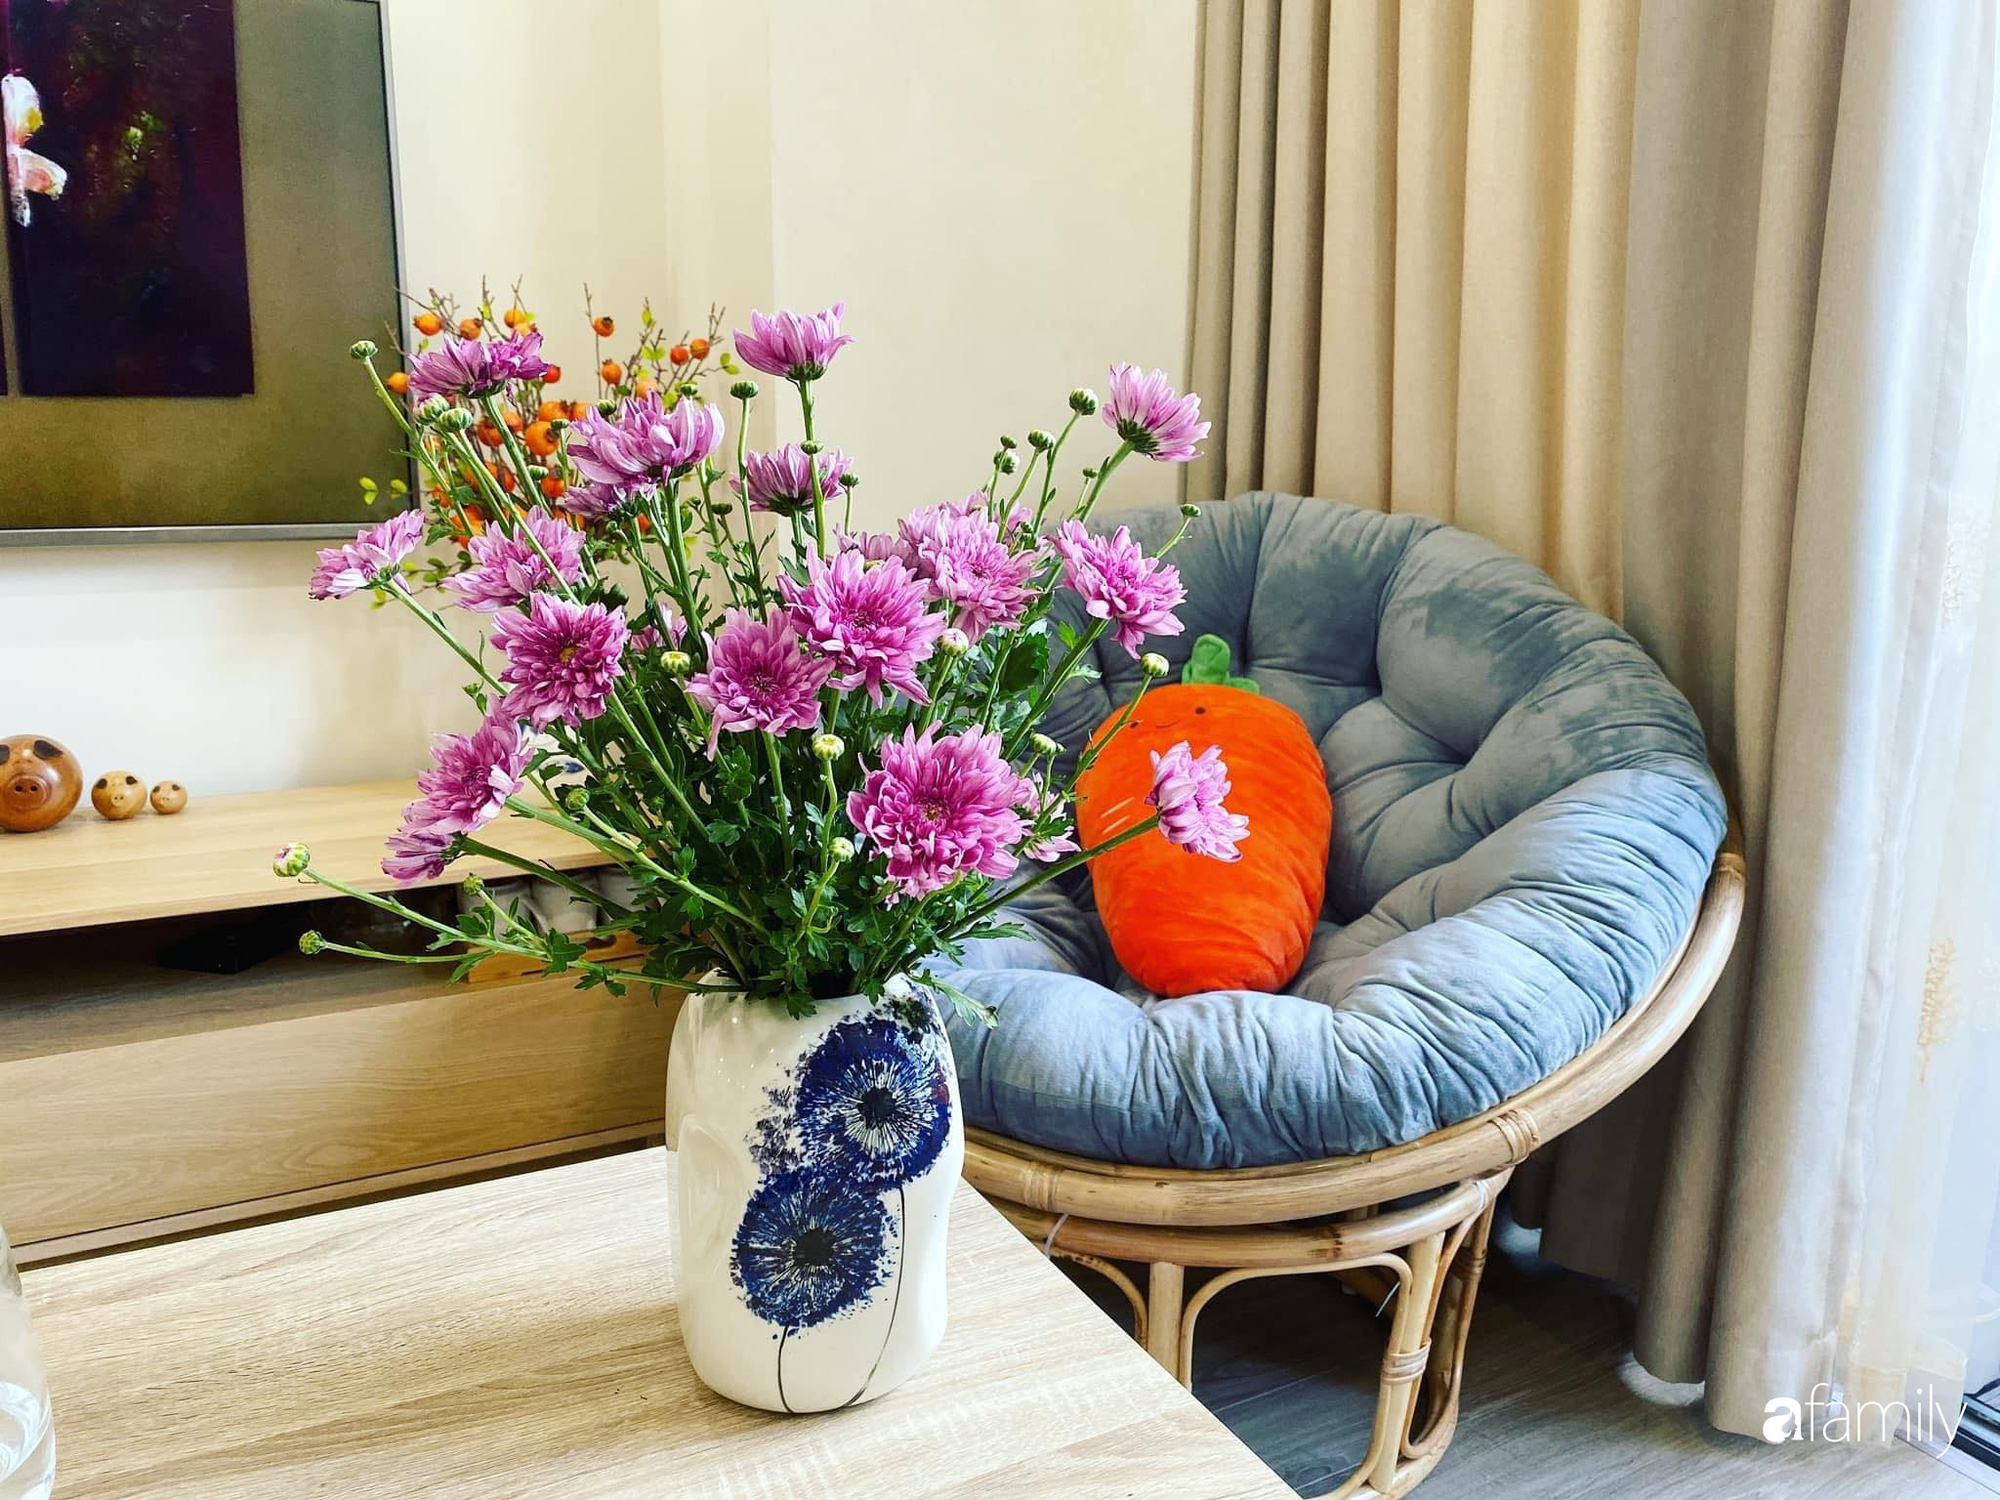 Căn hộ 76,9m2 đầm ấm với sắc hoa dịu dàng đón Tết ở Mỹ Đình, Hà Nội - Ảnh 8.